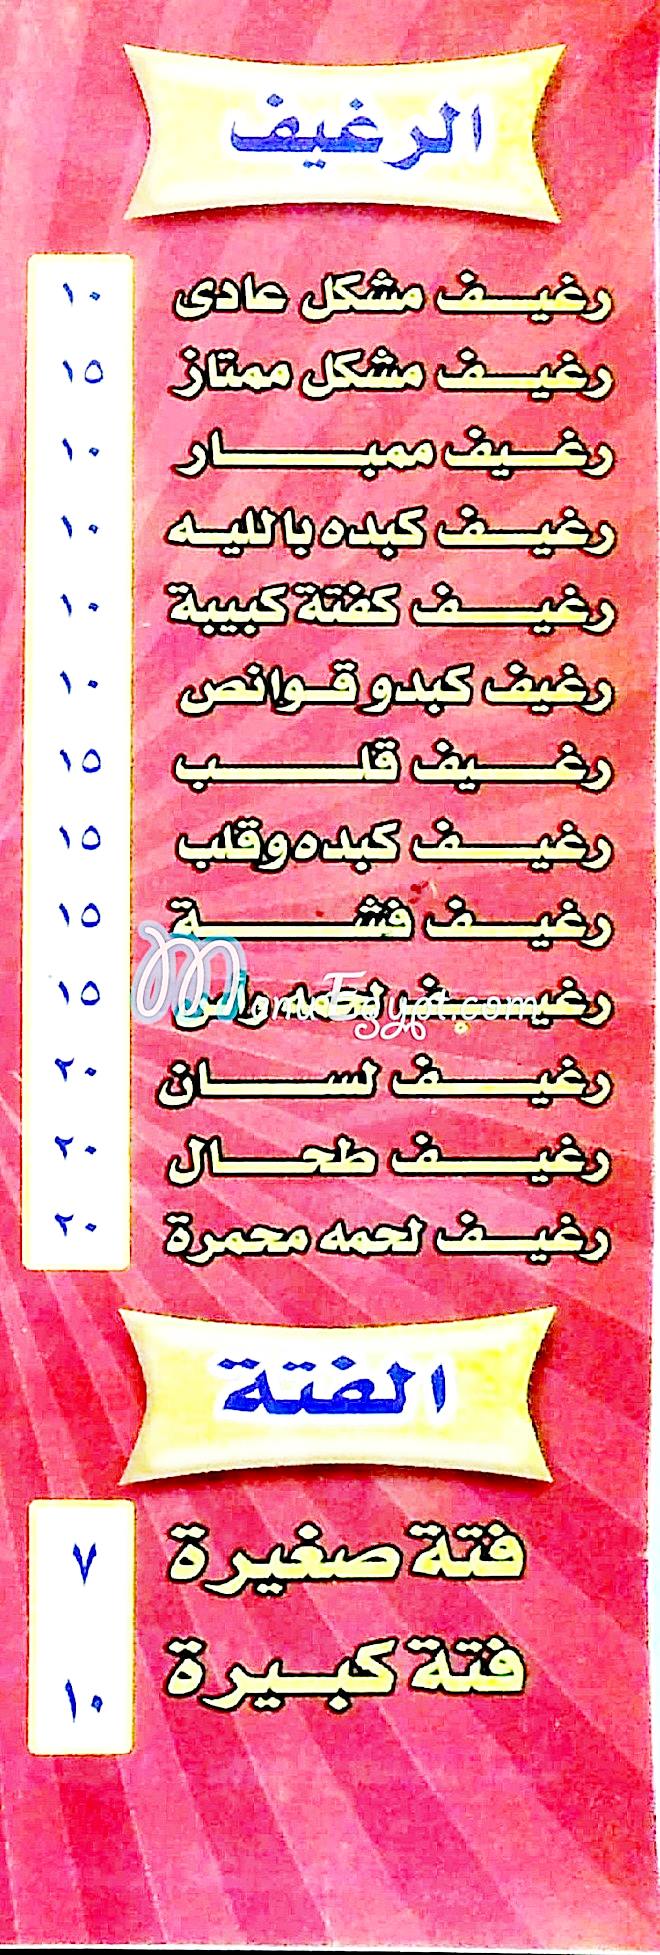 Masmat Al Hamoly menu